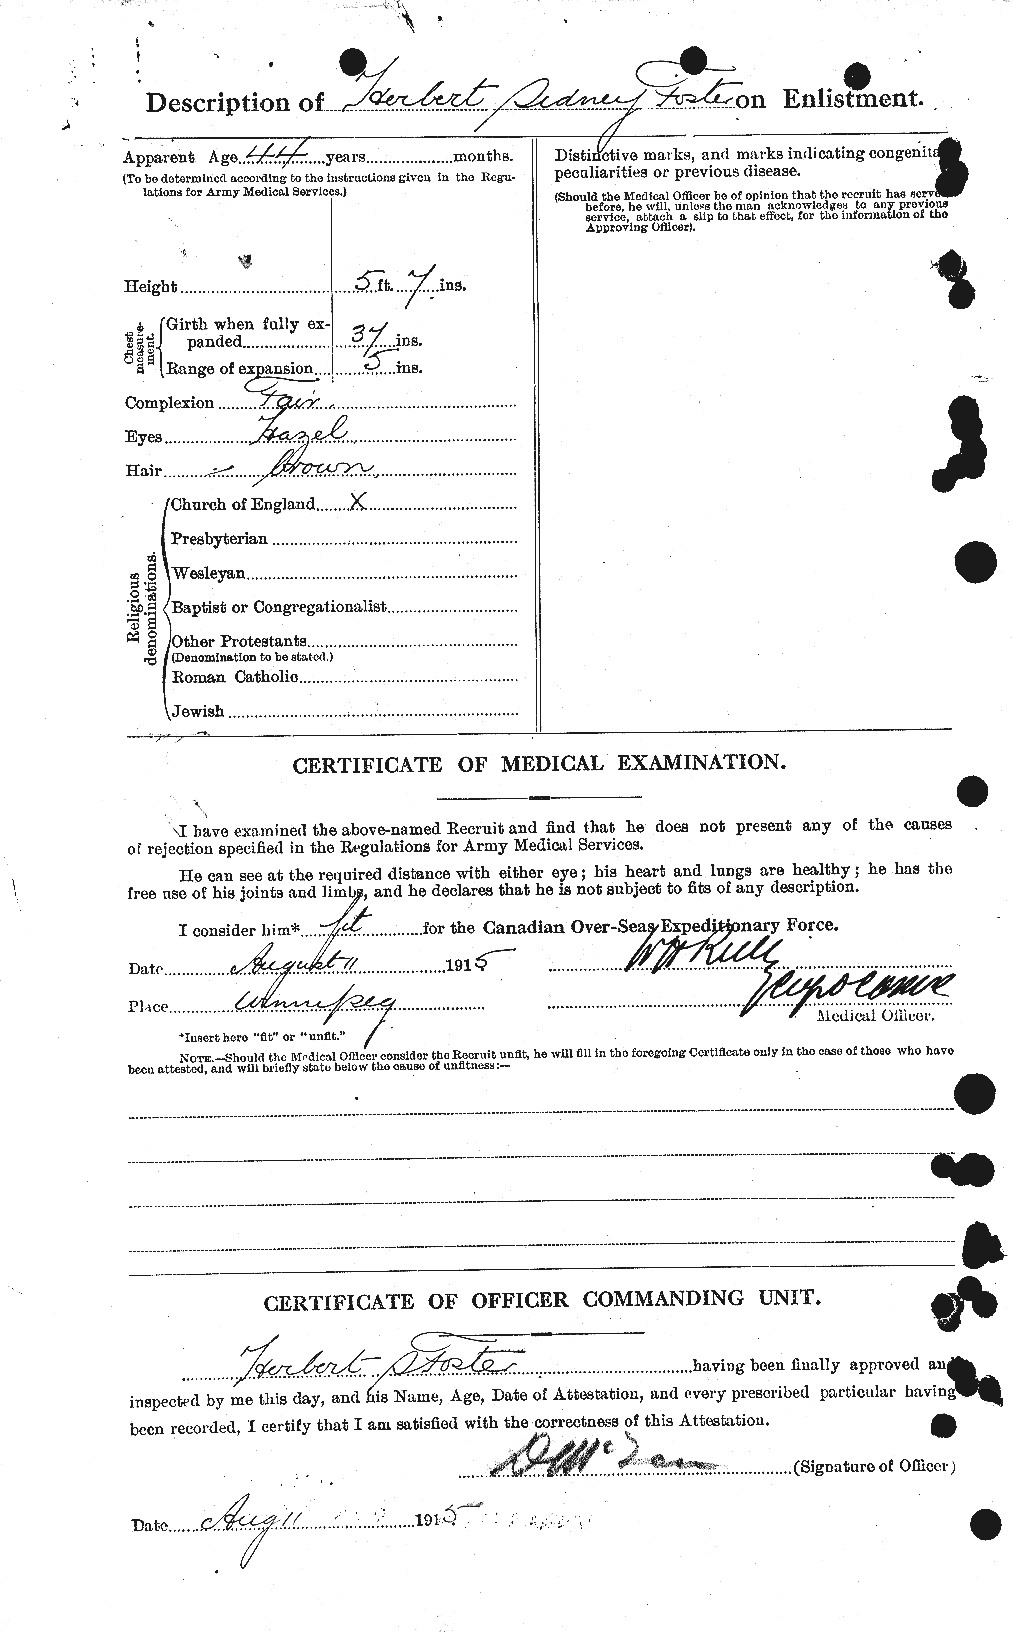 Dossiers du Personnel de la Première Guerre mondiale - CEC 333260b